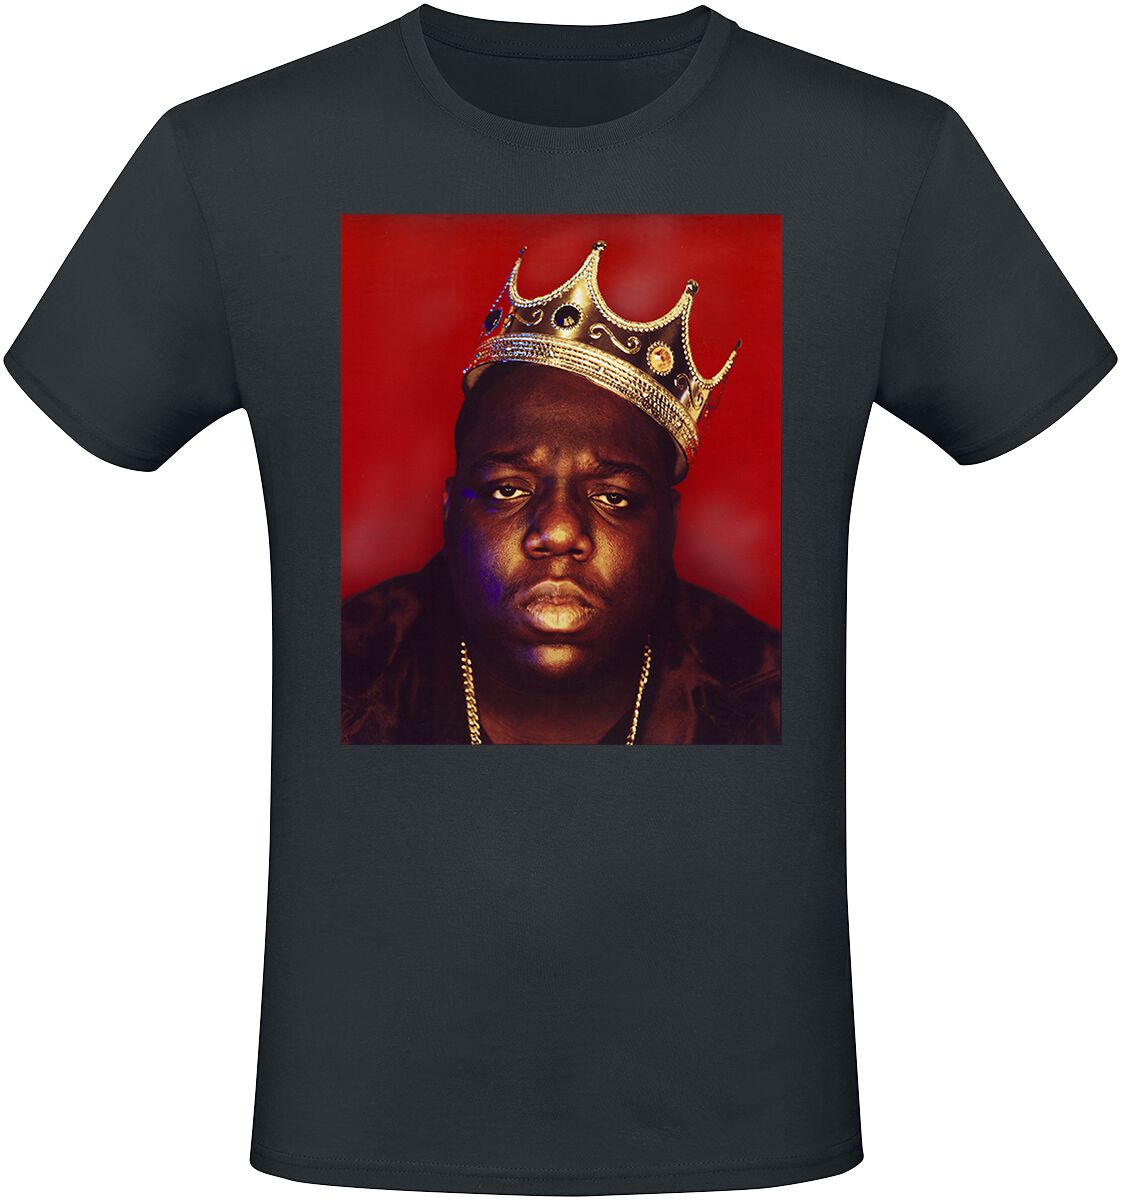 Notorious B.I.G. T-Shirt - Big Crown - S bis XXL - für Männer - Größe S - schwarz  - Lizenziertes Merchandise!